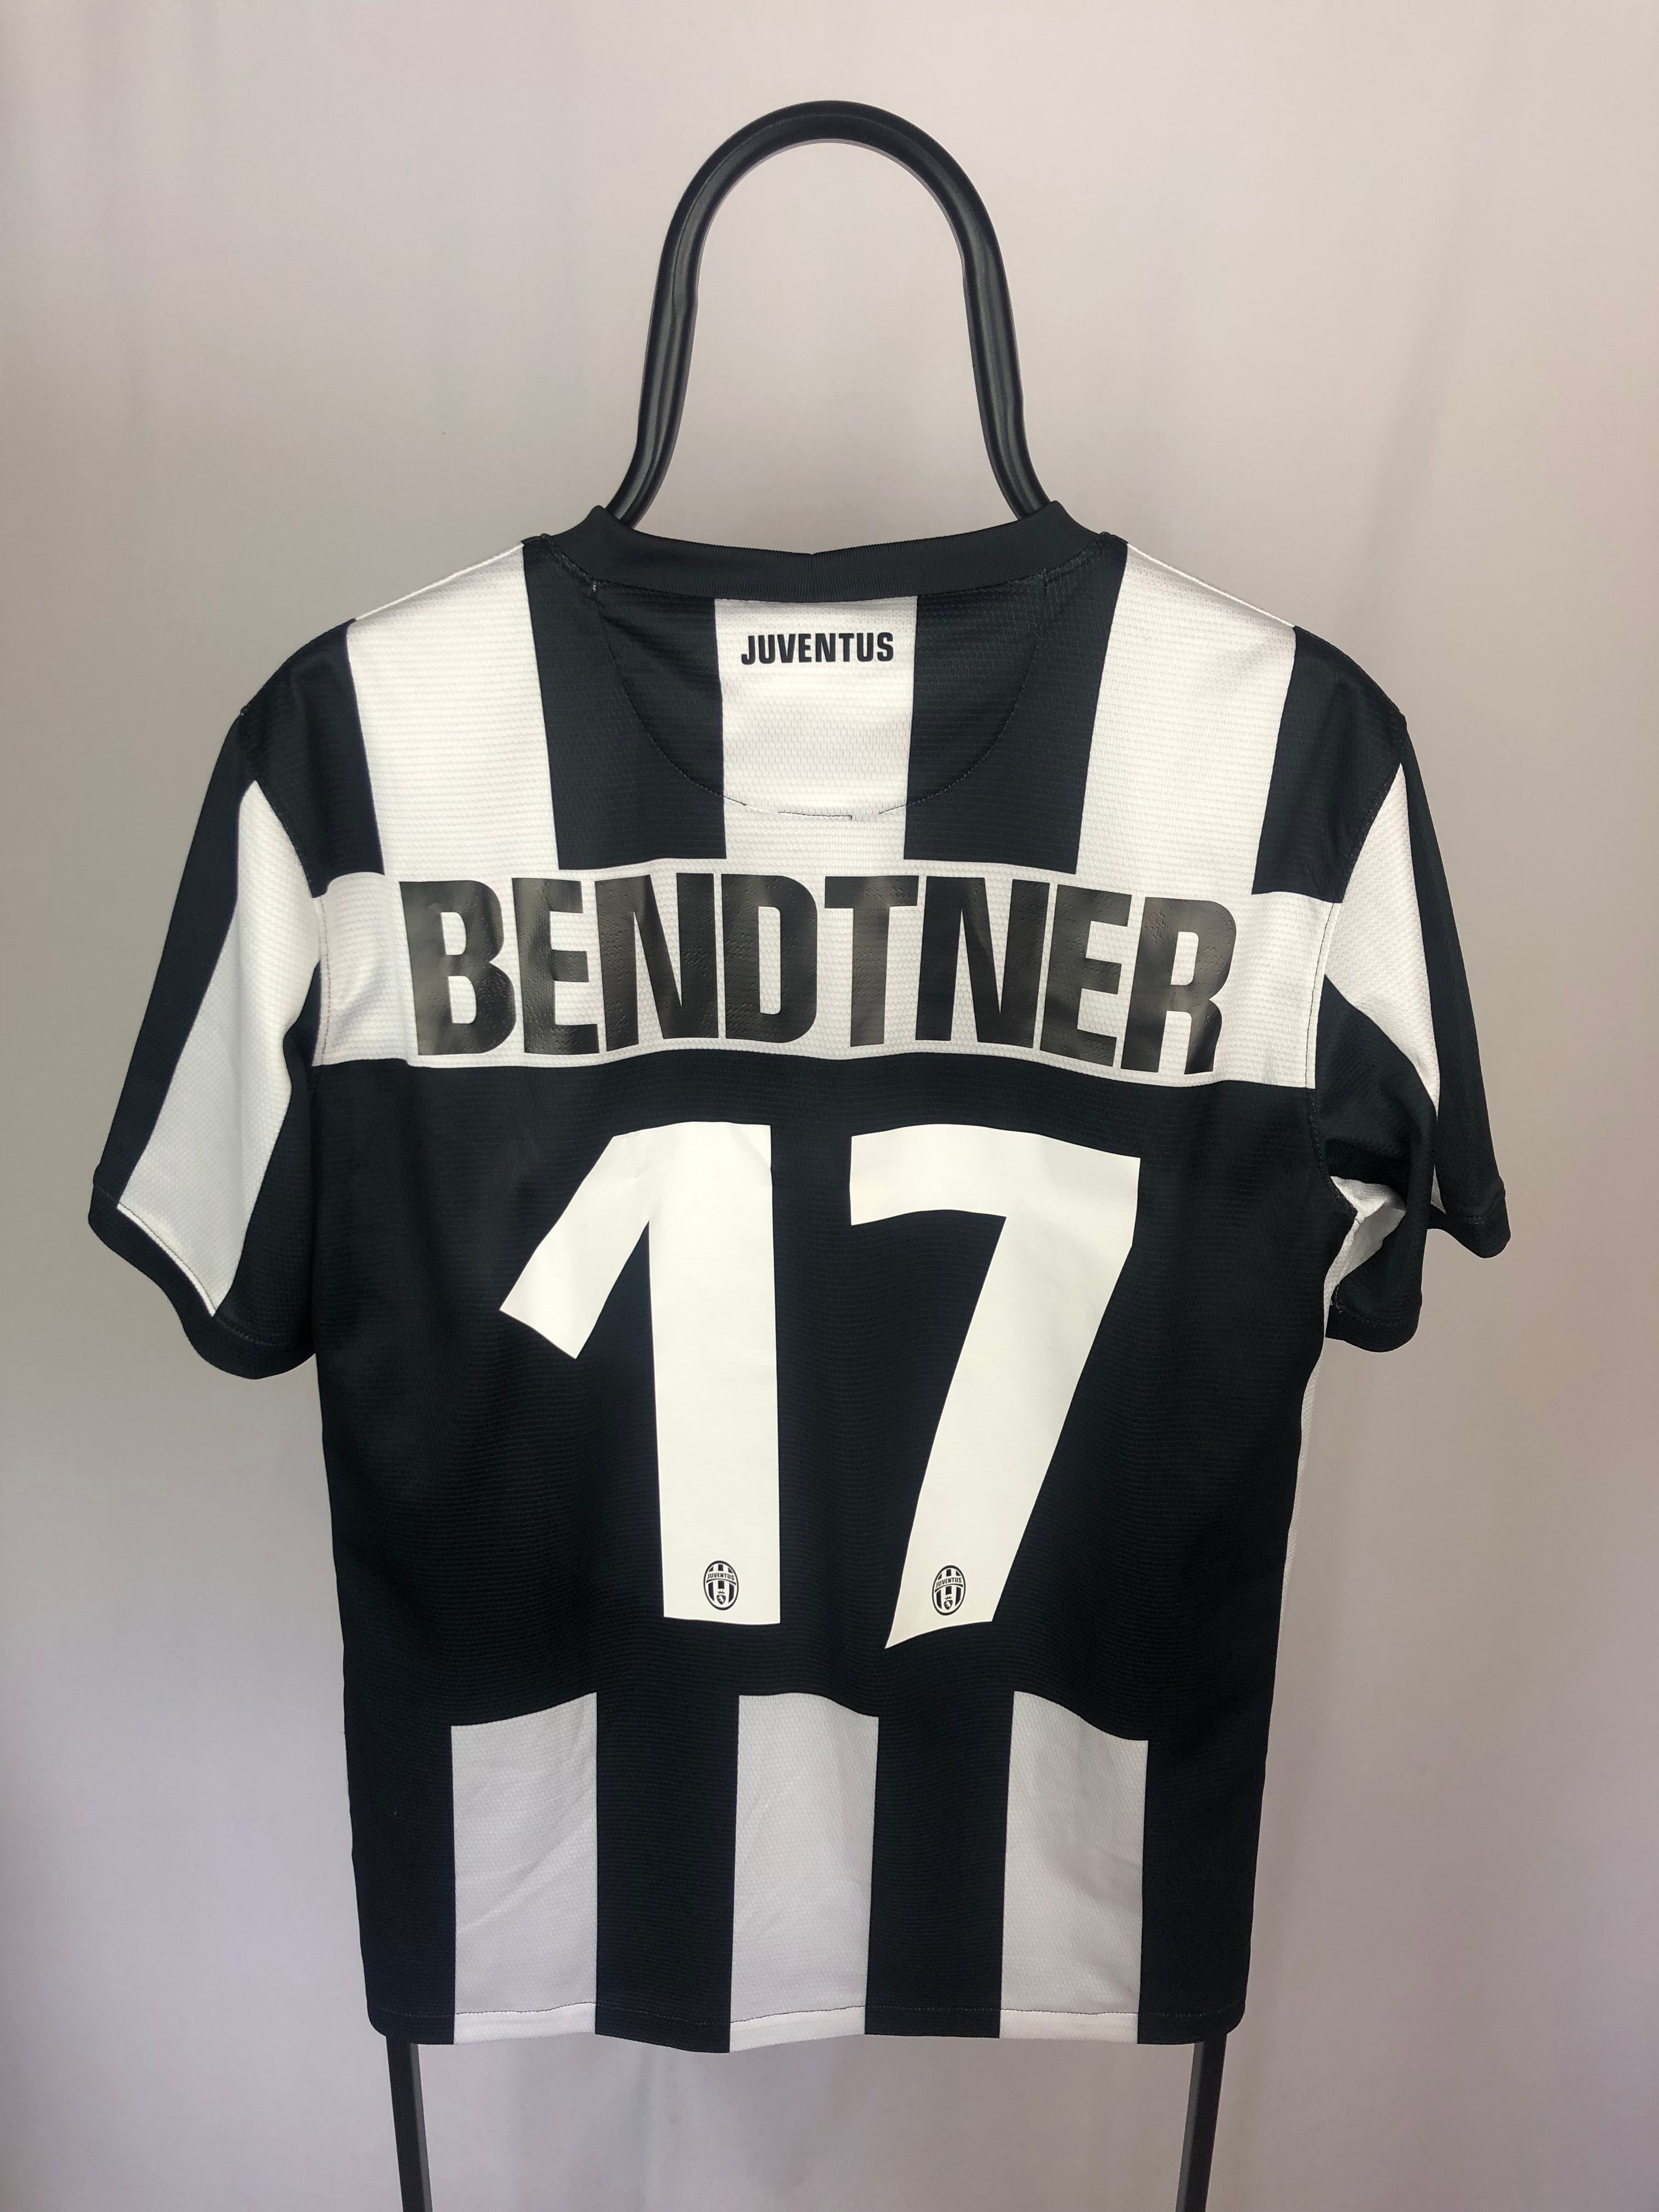 Nicklas Bendtner Juventus 12/13 home jersey - M